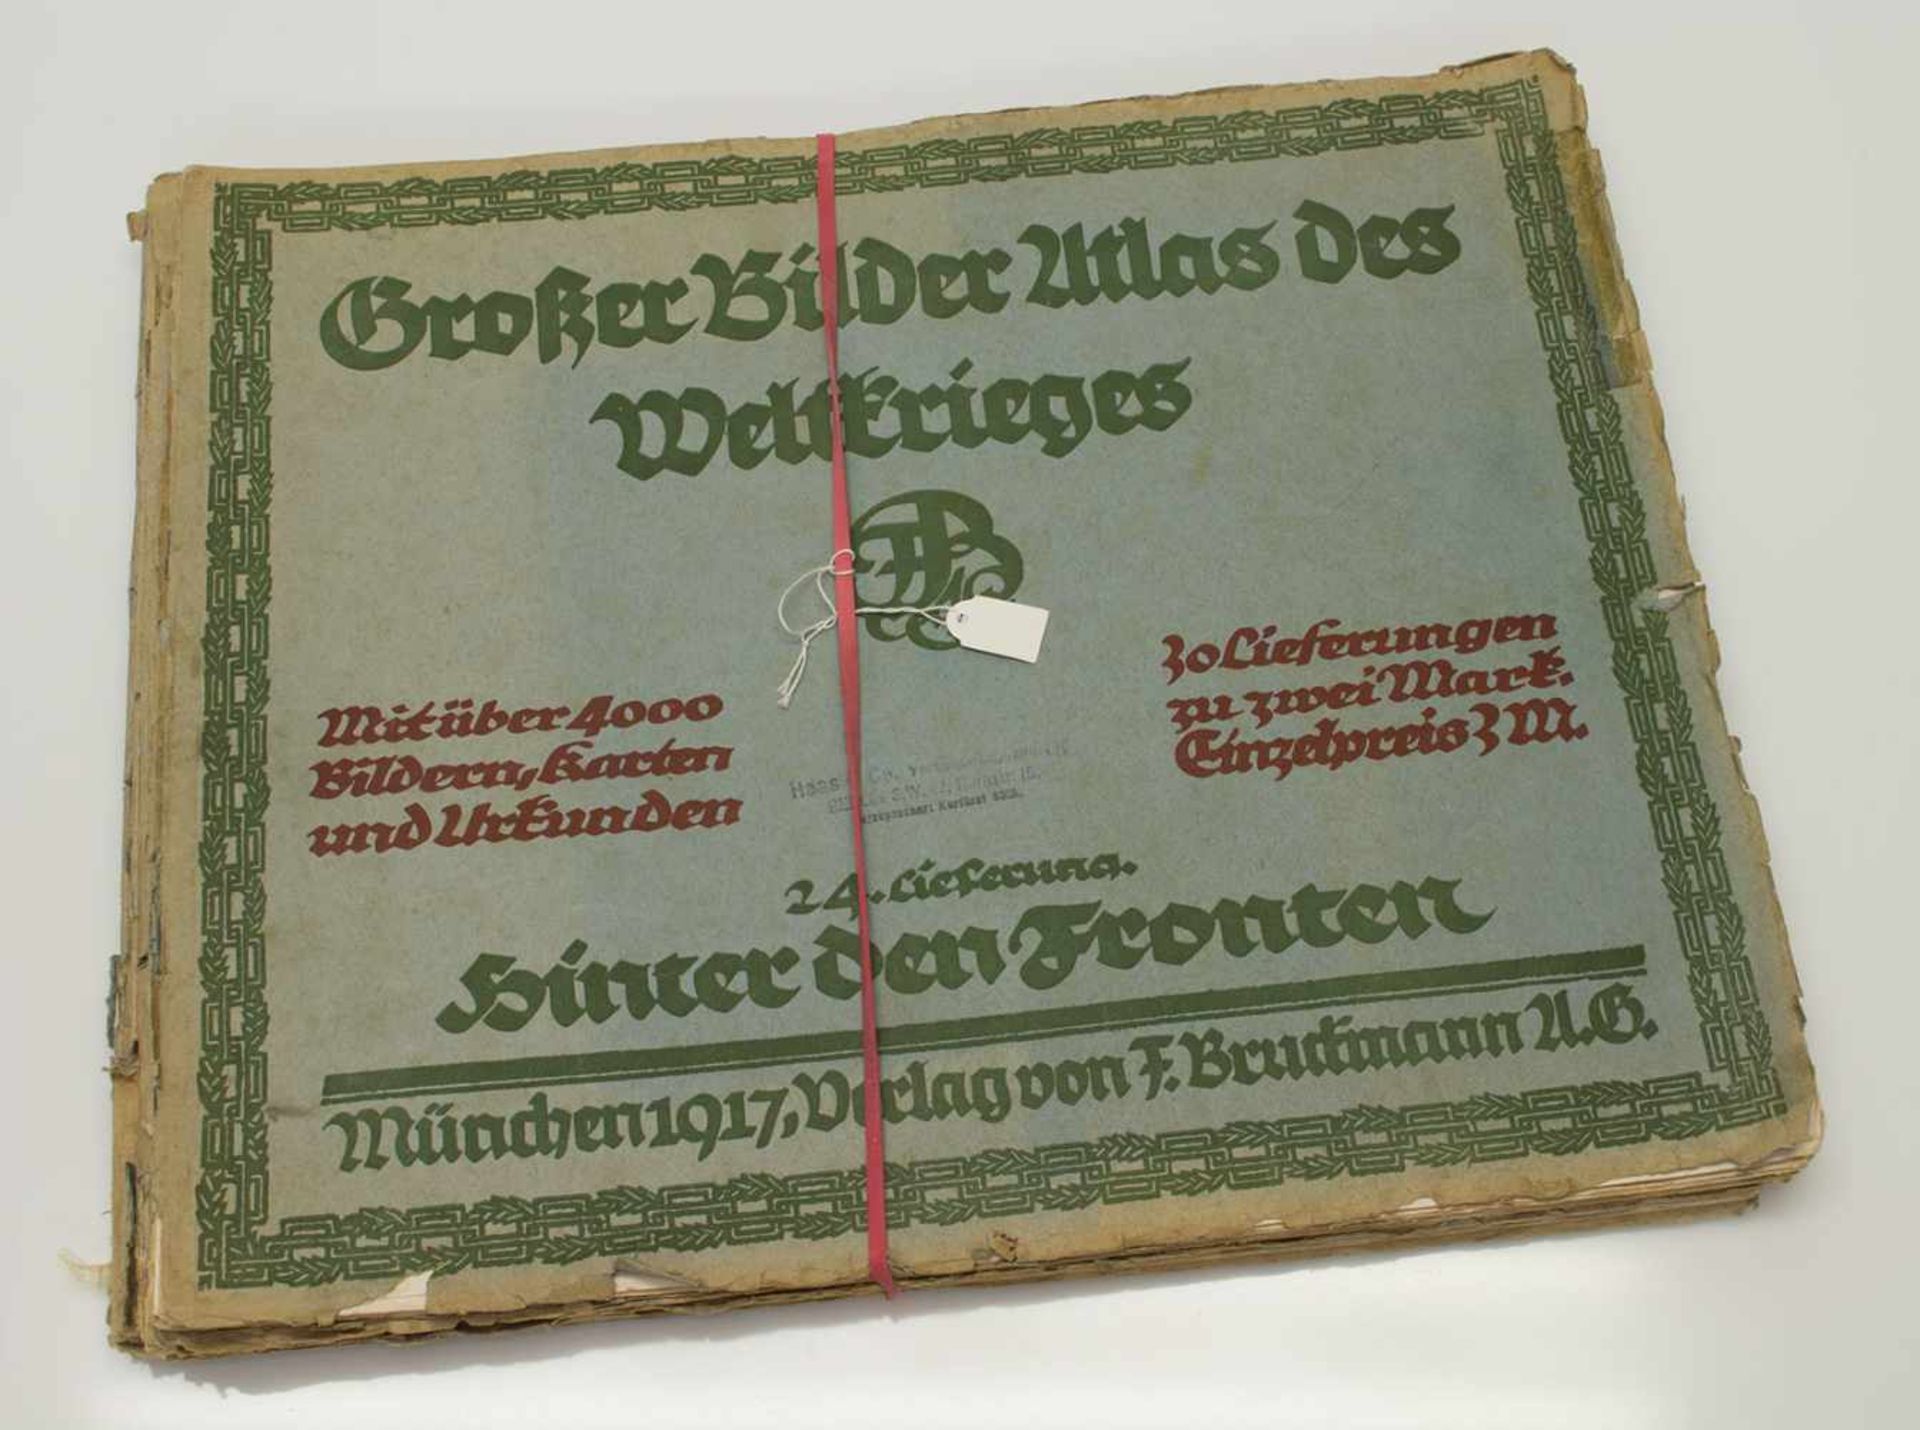 HerausgeberGrosser Bilder Atlas des Weltkrieges Bruckmann Verlag 1915-17, 5 Ausgaben mit zahlreichen